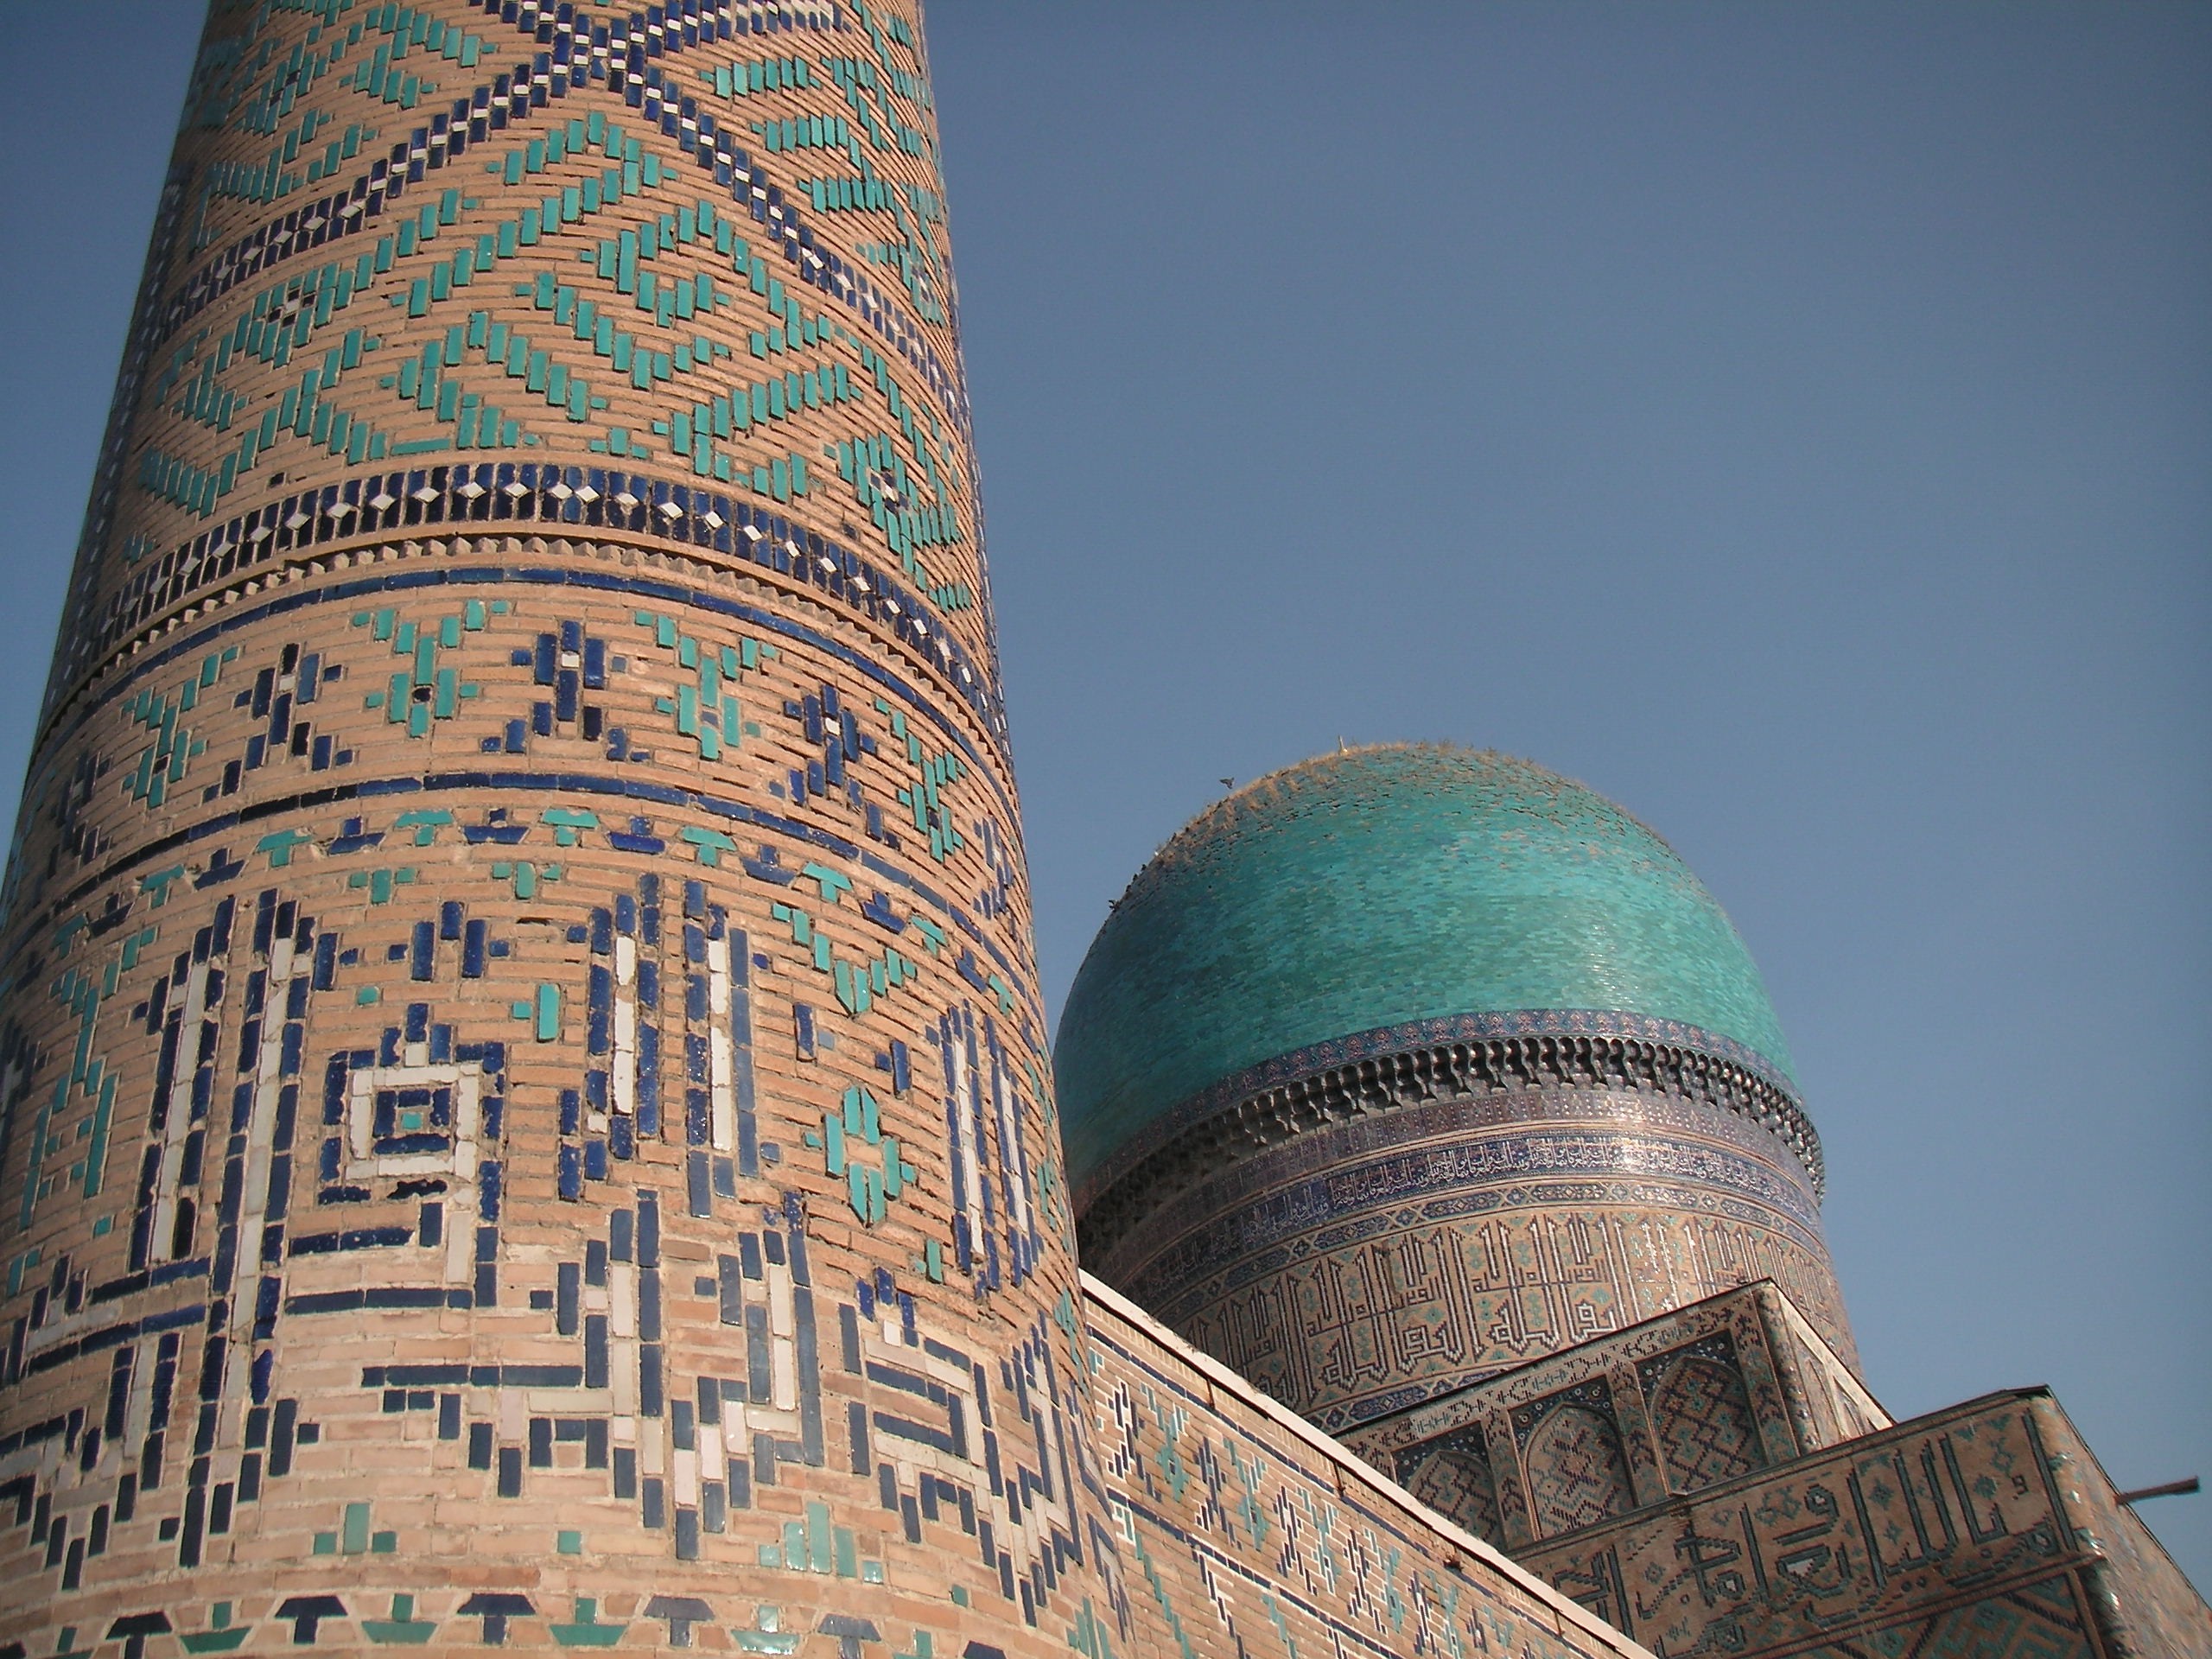 Bibihanum Mosque